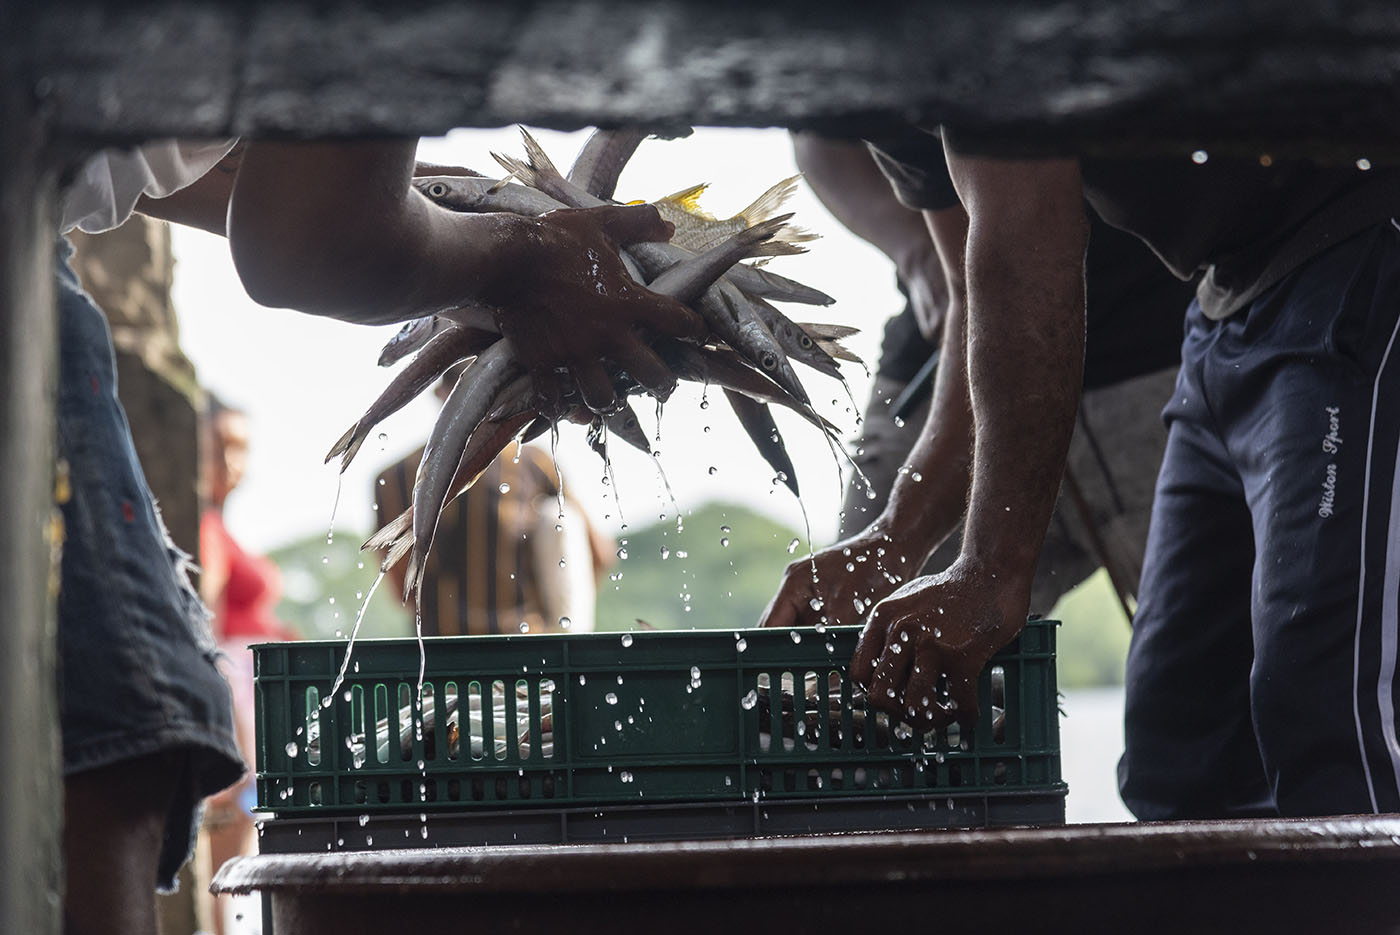 El pescado llega fresco a la Plaza de Mariscos de Tumaco, y antes de ser vendido debe ser aliñado, es decir limpiado de vísceras y quedar listo para el consumo. Fotos: Jeimi Villamizar, Unimedios.